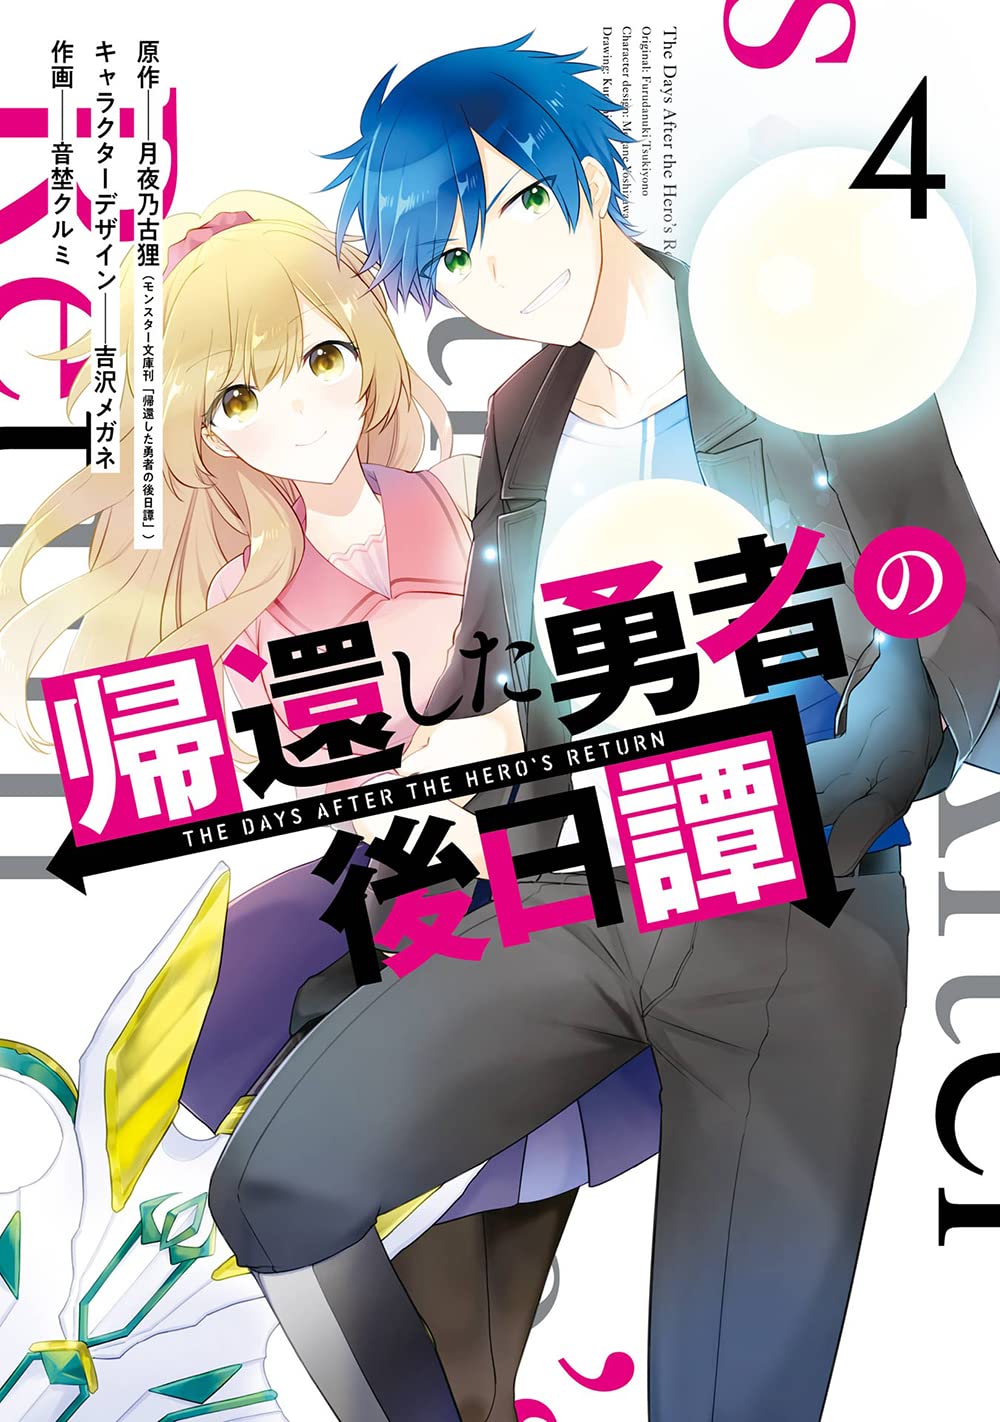 Dai Densetsu no Yuusha no Densetsu – Just Light Novel